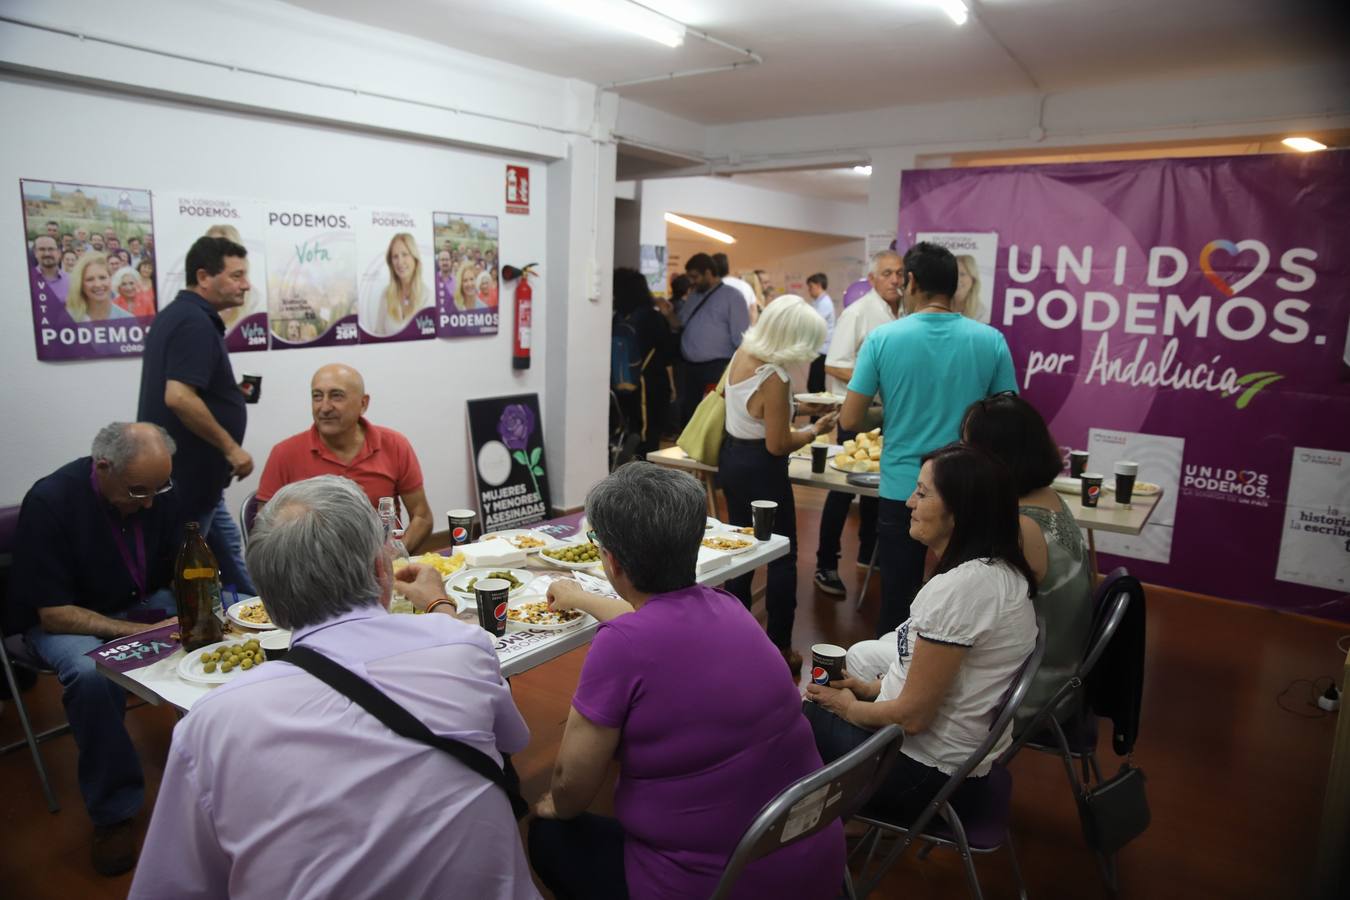 La noche electoral de Podemos Córdoba, en imágenes